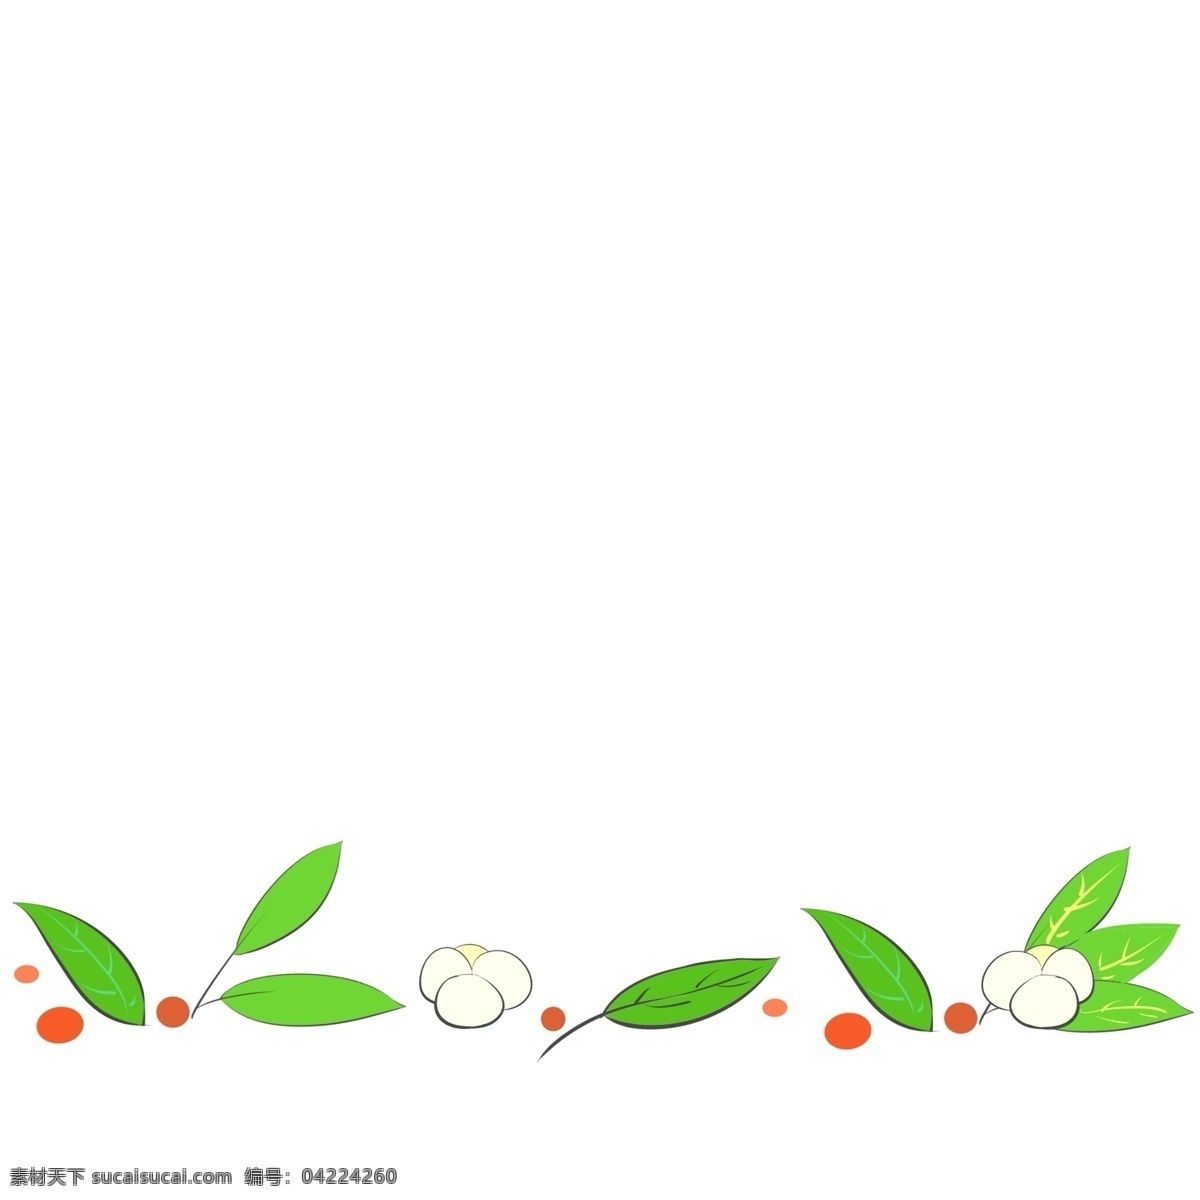 植物 分割线 卡通 插画 绿色的植物 卡通插画 分割线插画 简易分割线 装饰插画 植物分割线